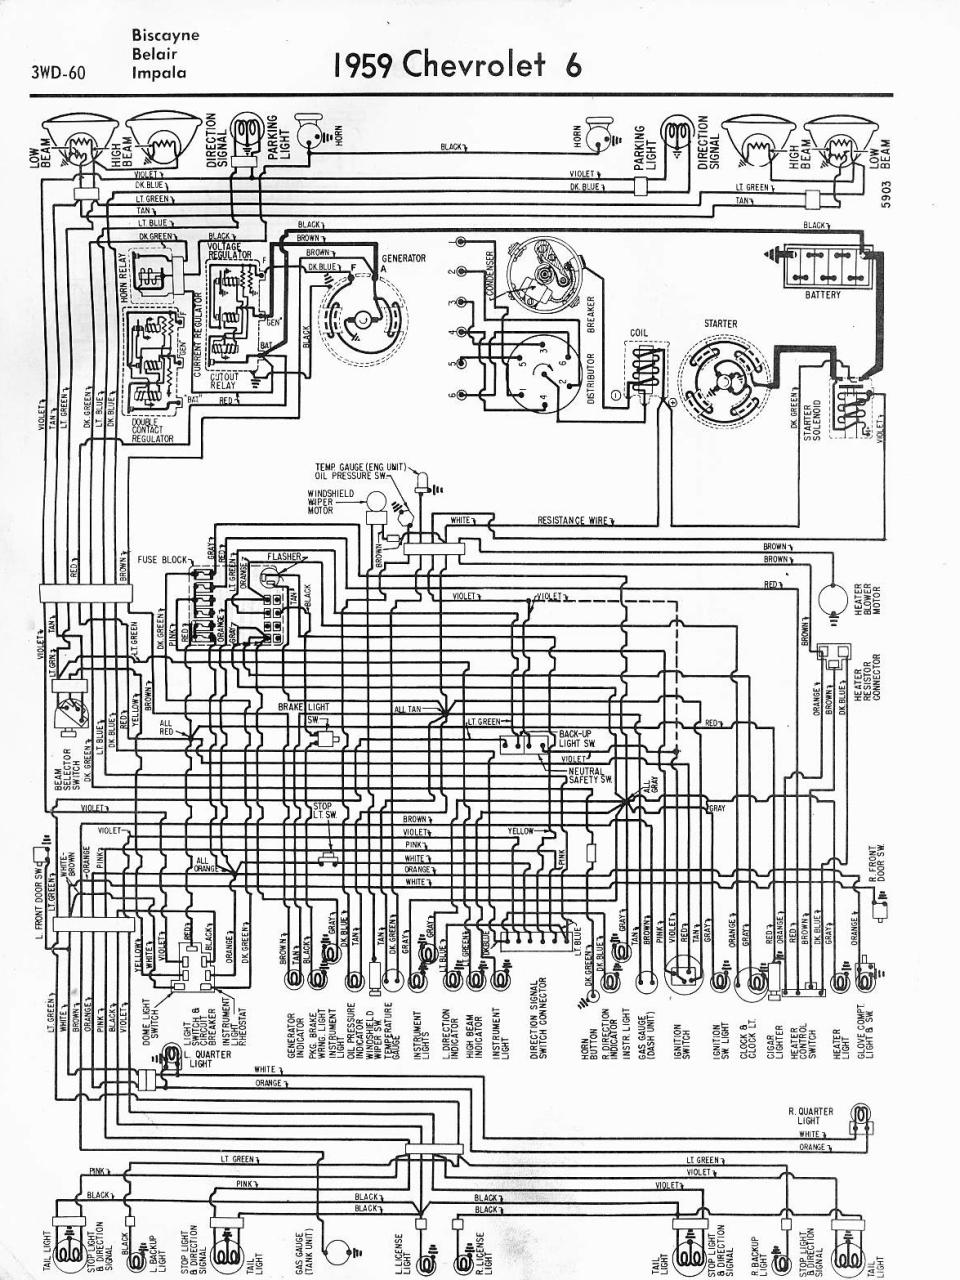 chevrolet 350 wiring diagram Wiring Diagram and Schematics